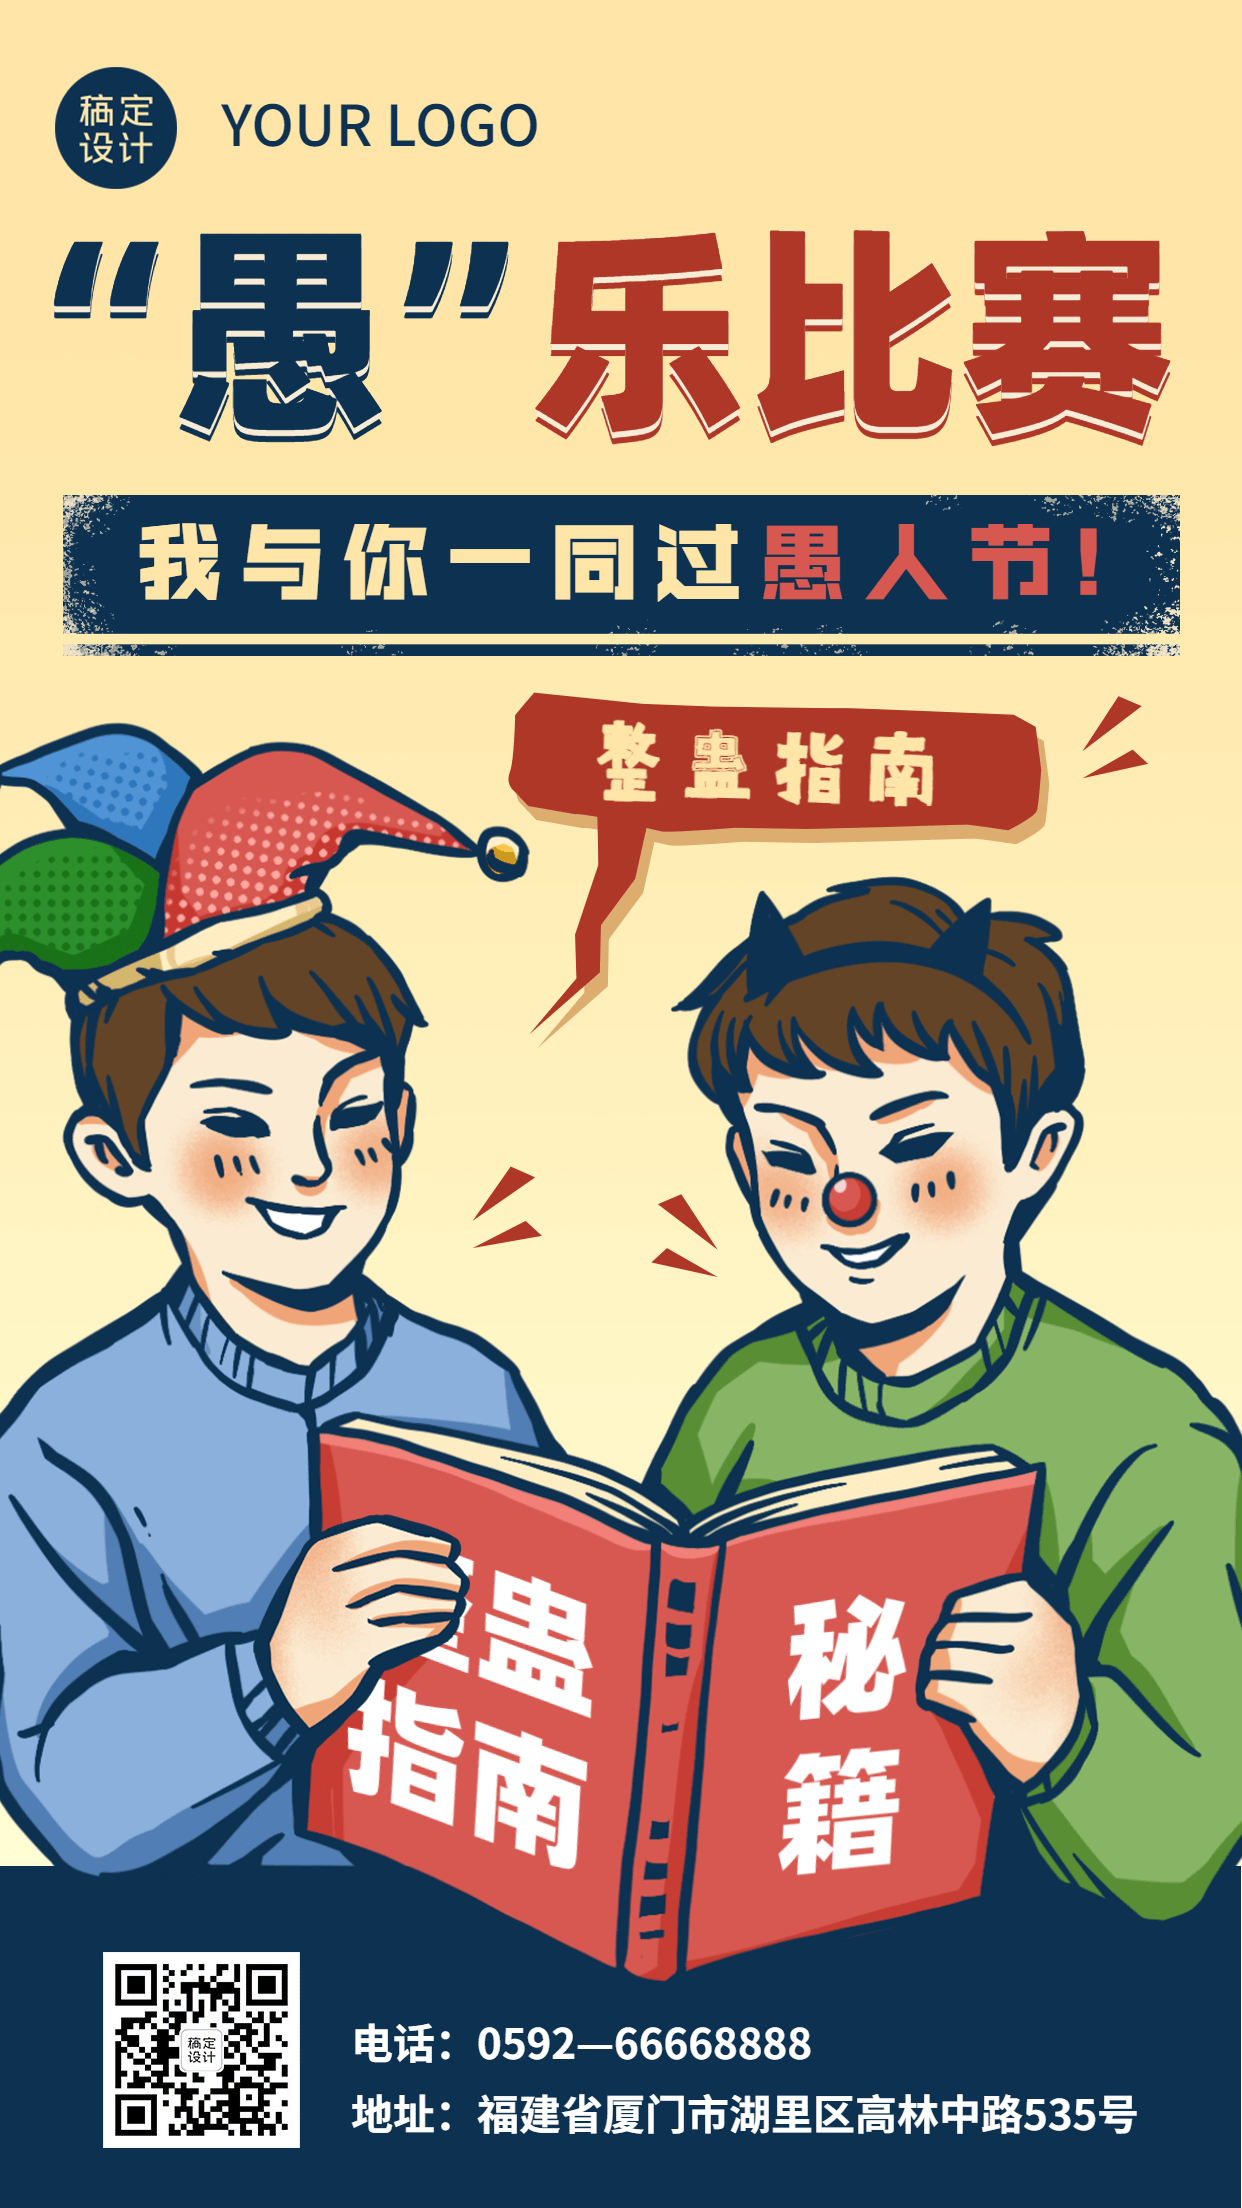 4.1愚人节节日祝福插画手机海报